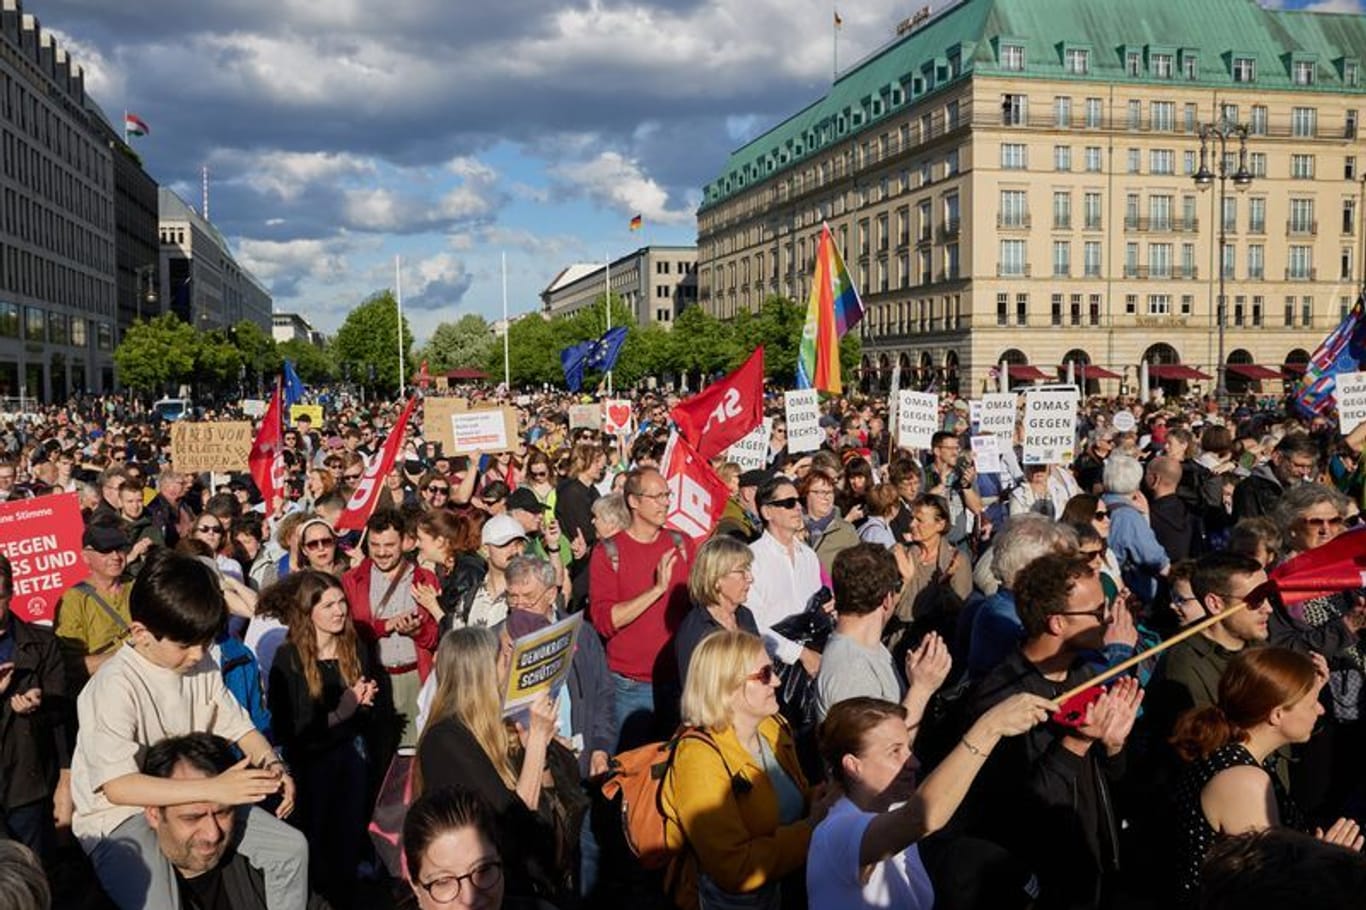 Nach dem Angriff auf den SPD-Europaabgeordneten Ecke findet vor dem Brandenburger Tor eine Solidaritätskundgebung statt. Der Europaabgeordnete Ecke war beim Plakatieren im Dresdner Stadtteil Striesen angegriffen und schwer verletzt worden